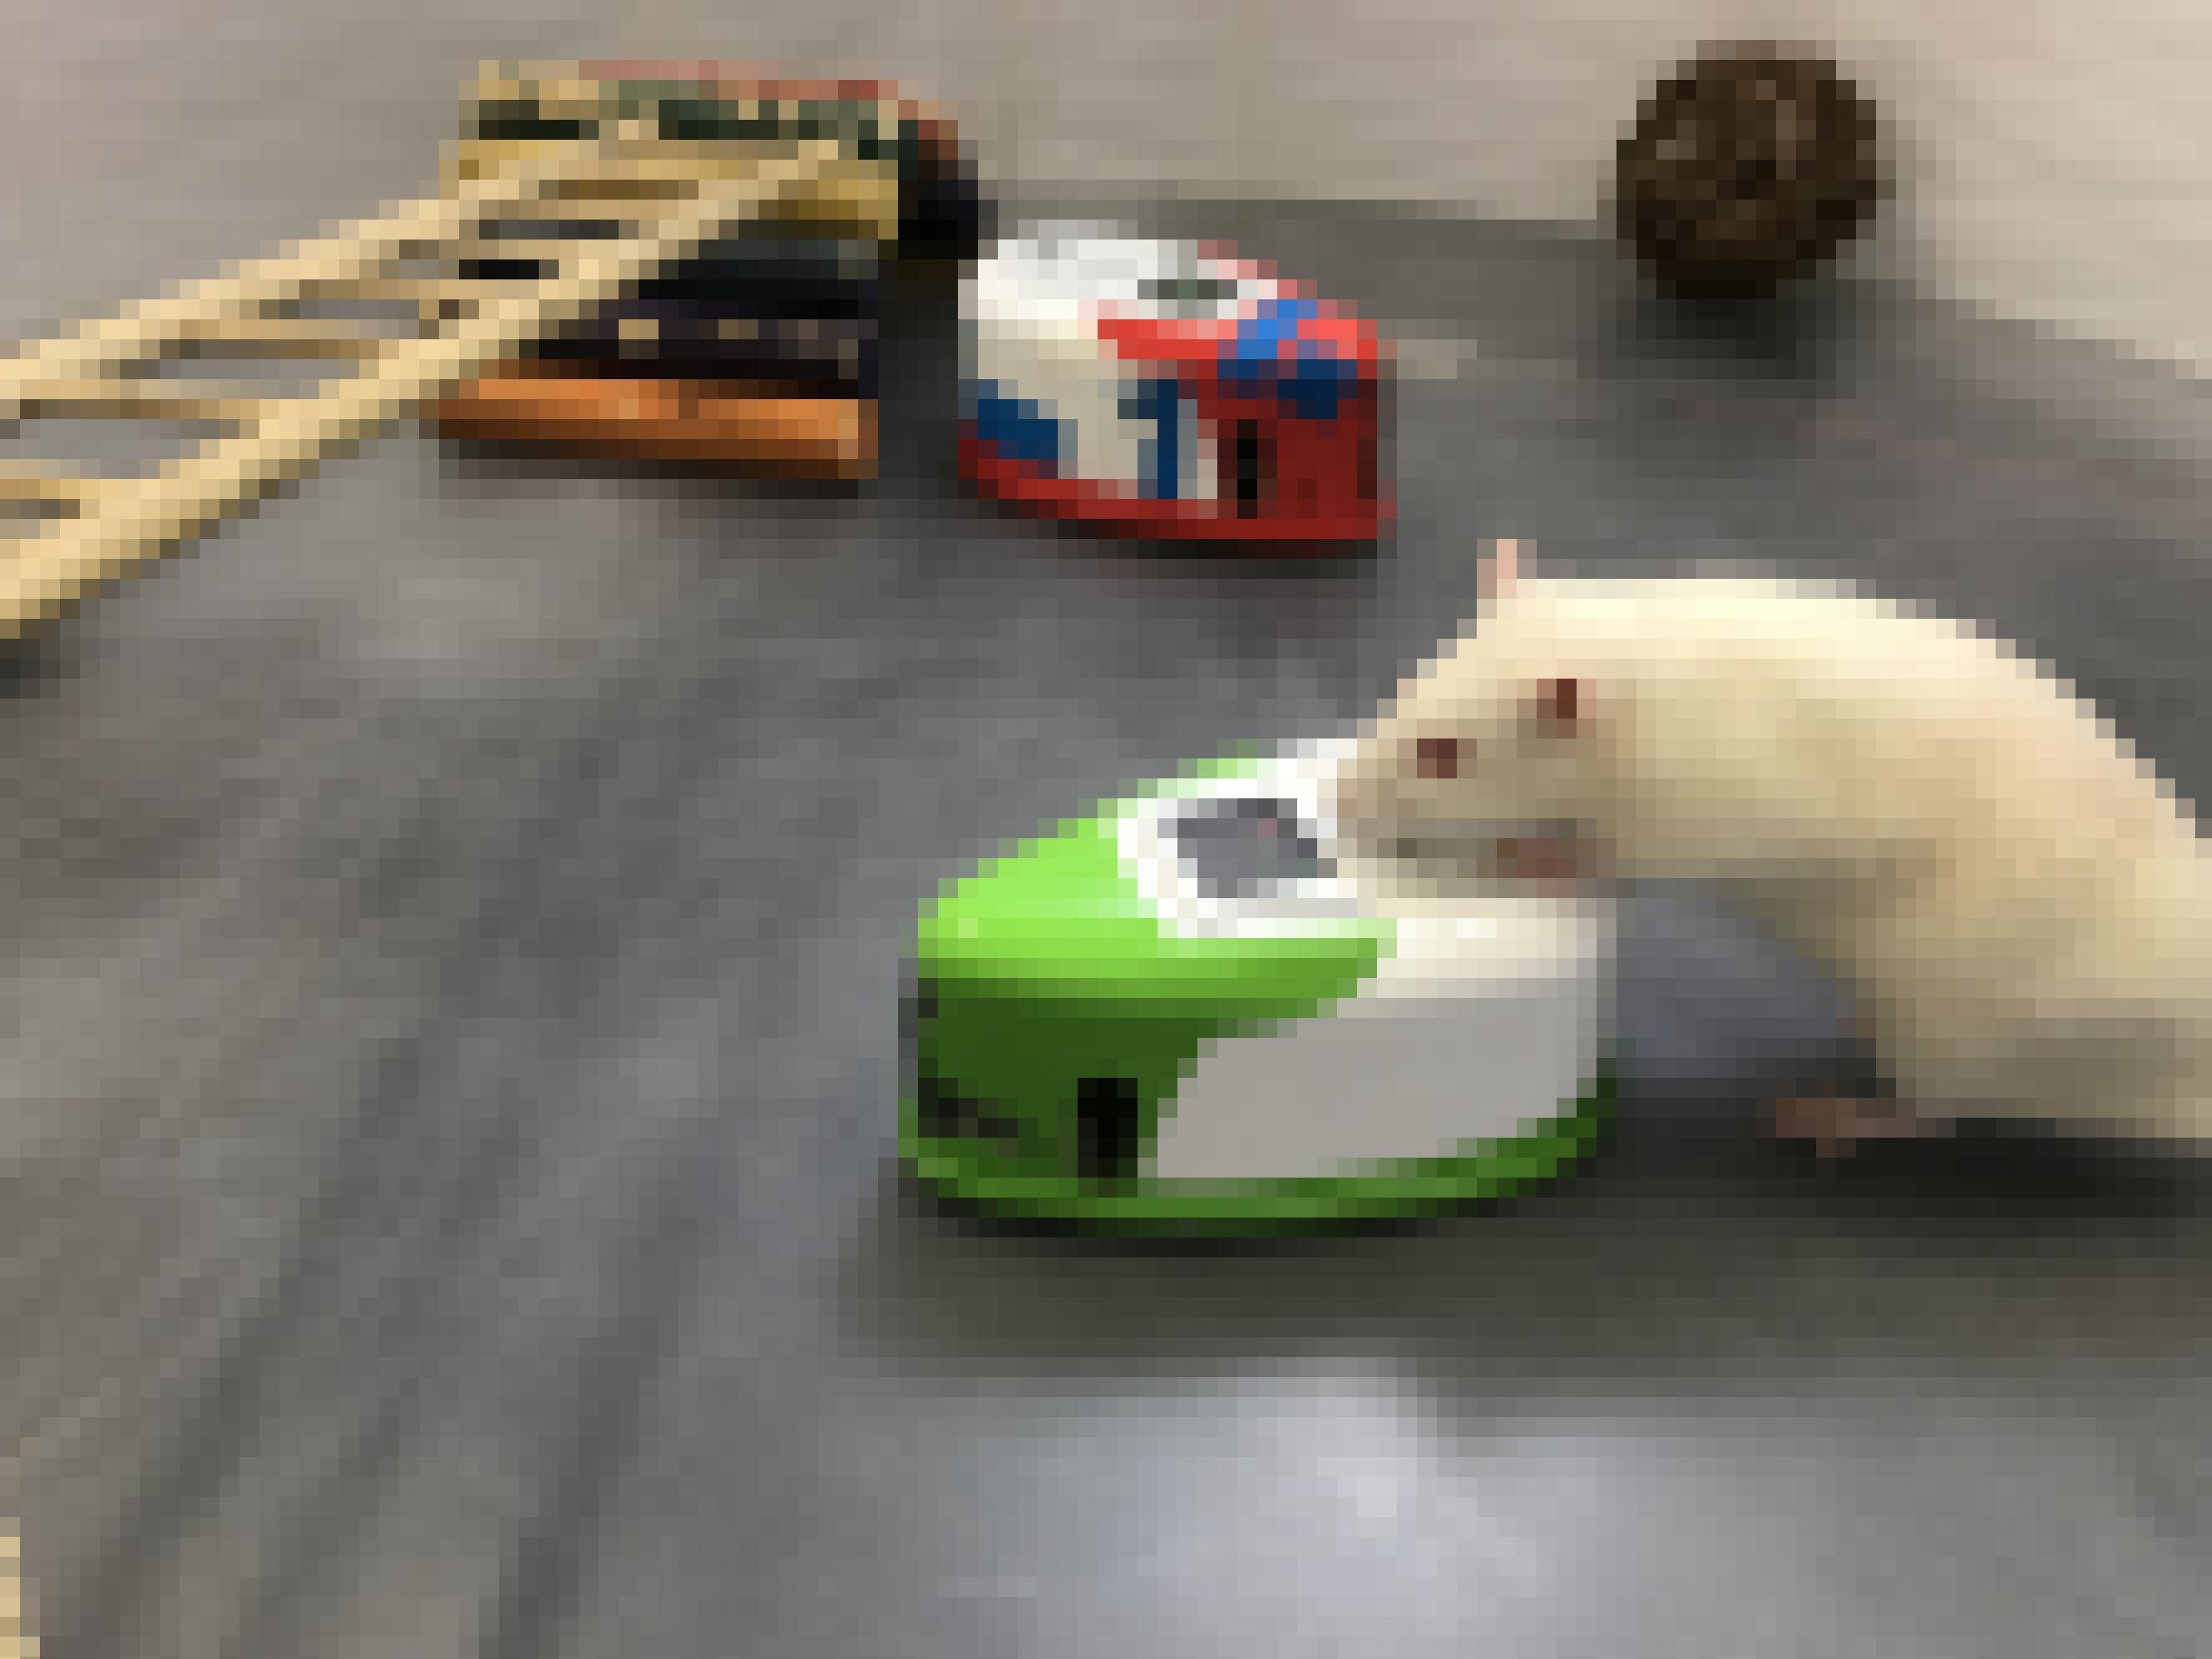 Eine weiße Ratte stellt sich mit den Vorderläufen auf einen Ratten-Roboter